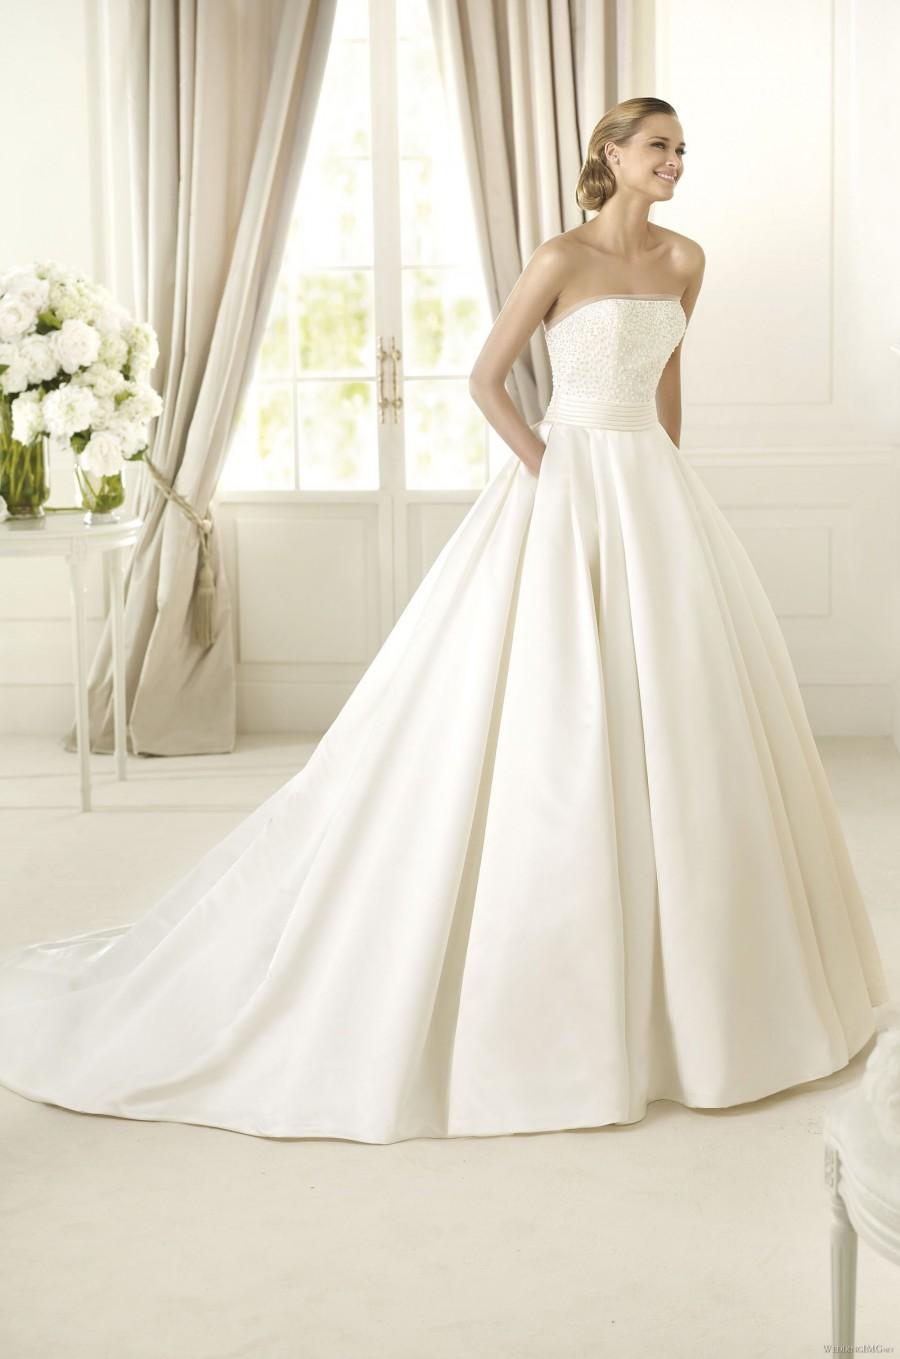 Mariage - Pronovias - Dalamo - 2013 - Glamorous Wedding Dresses